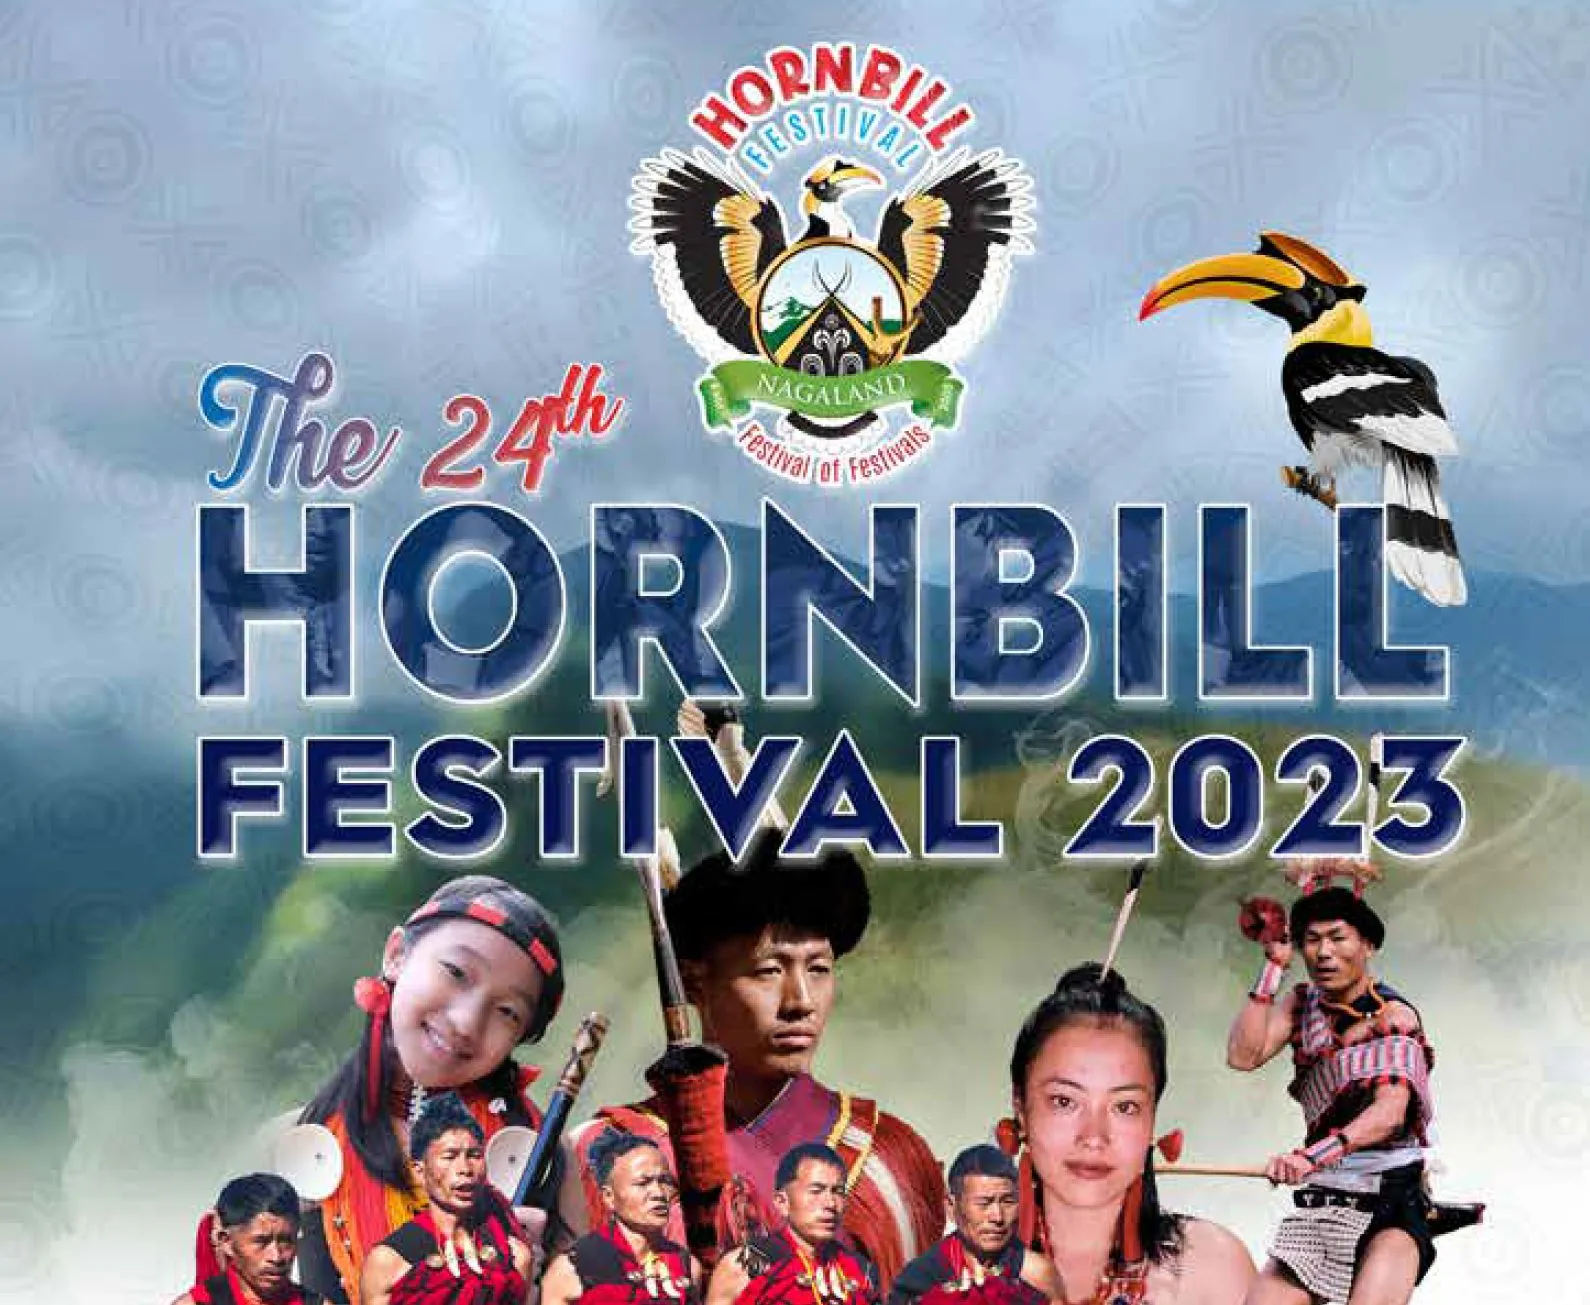 hornbill festival 2023